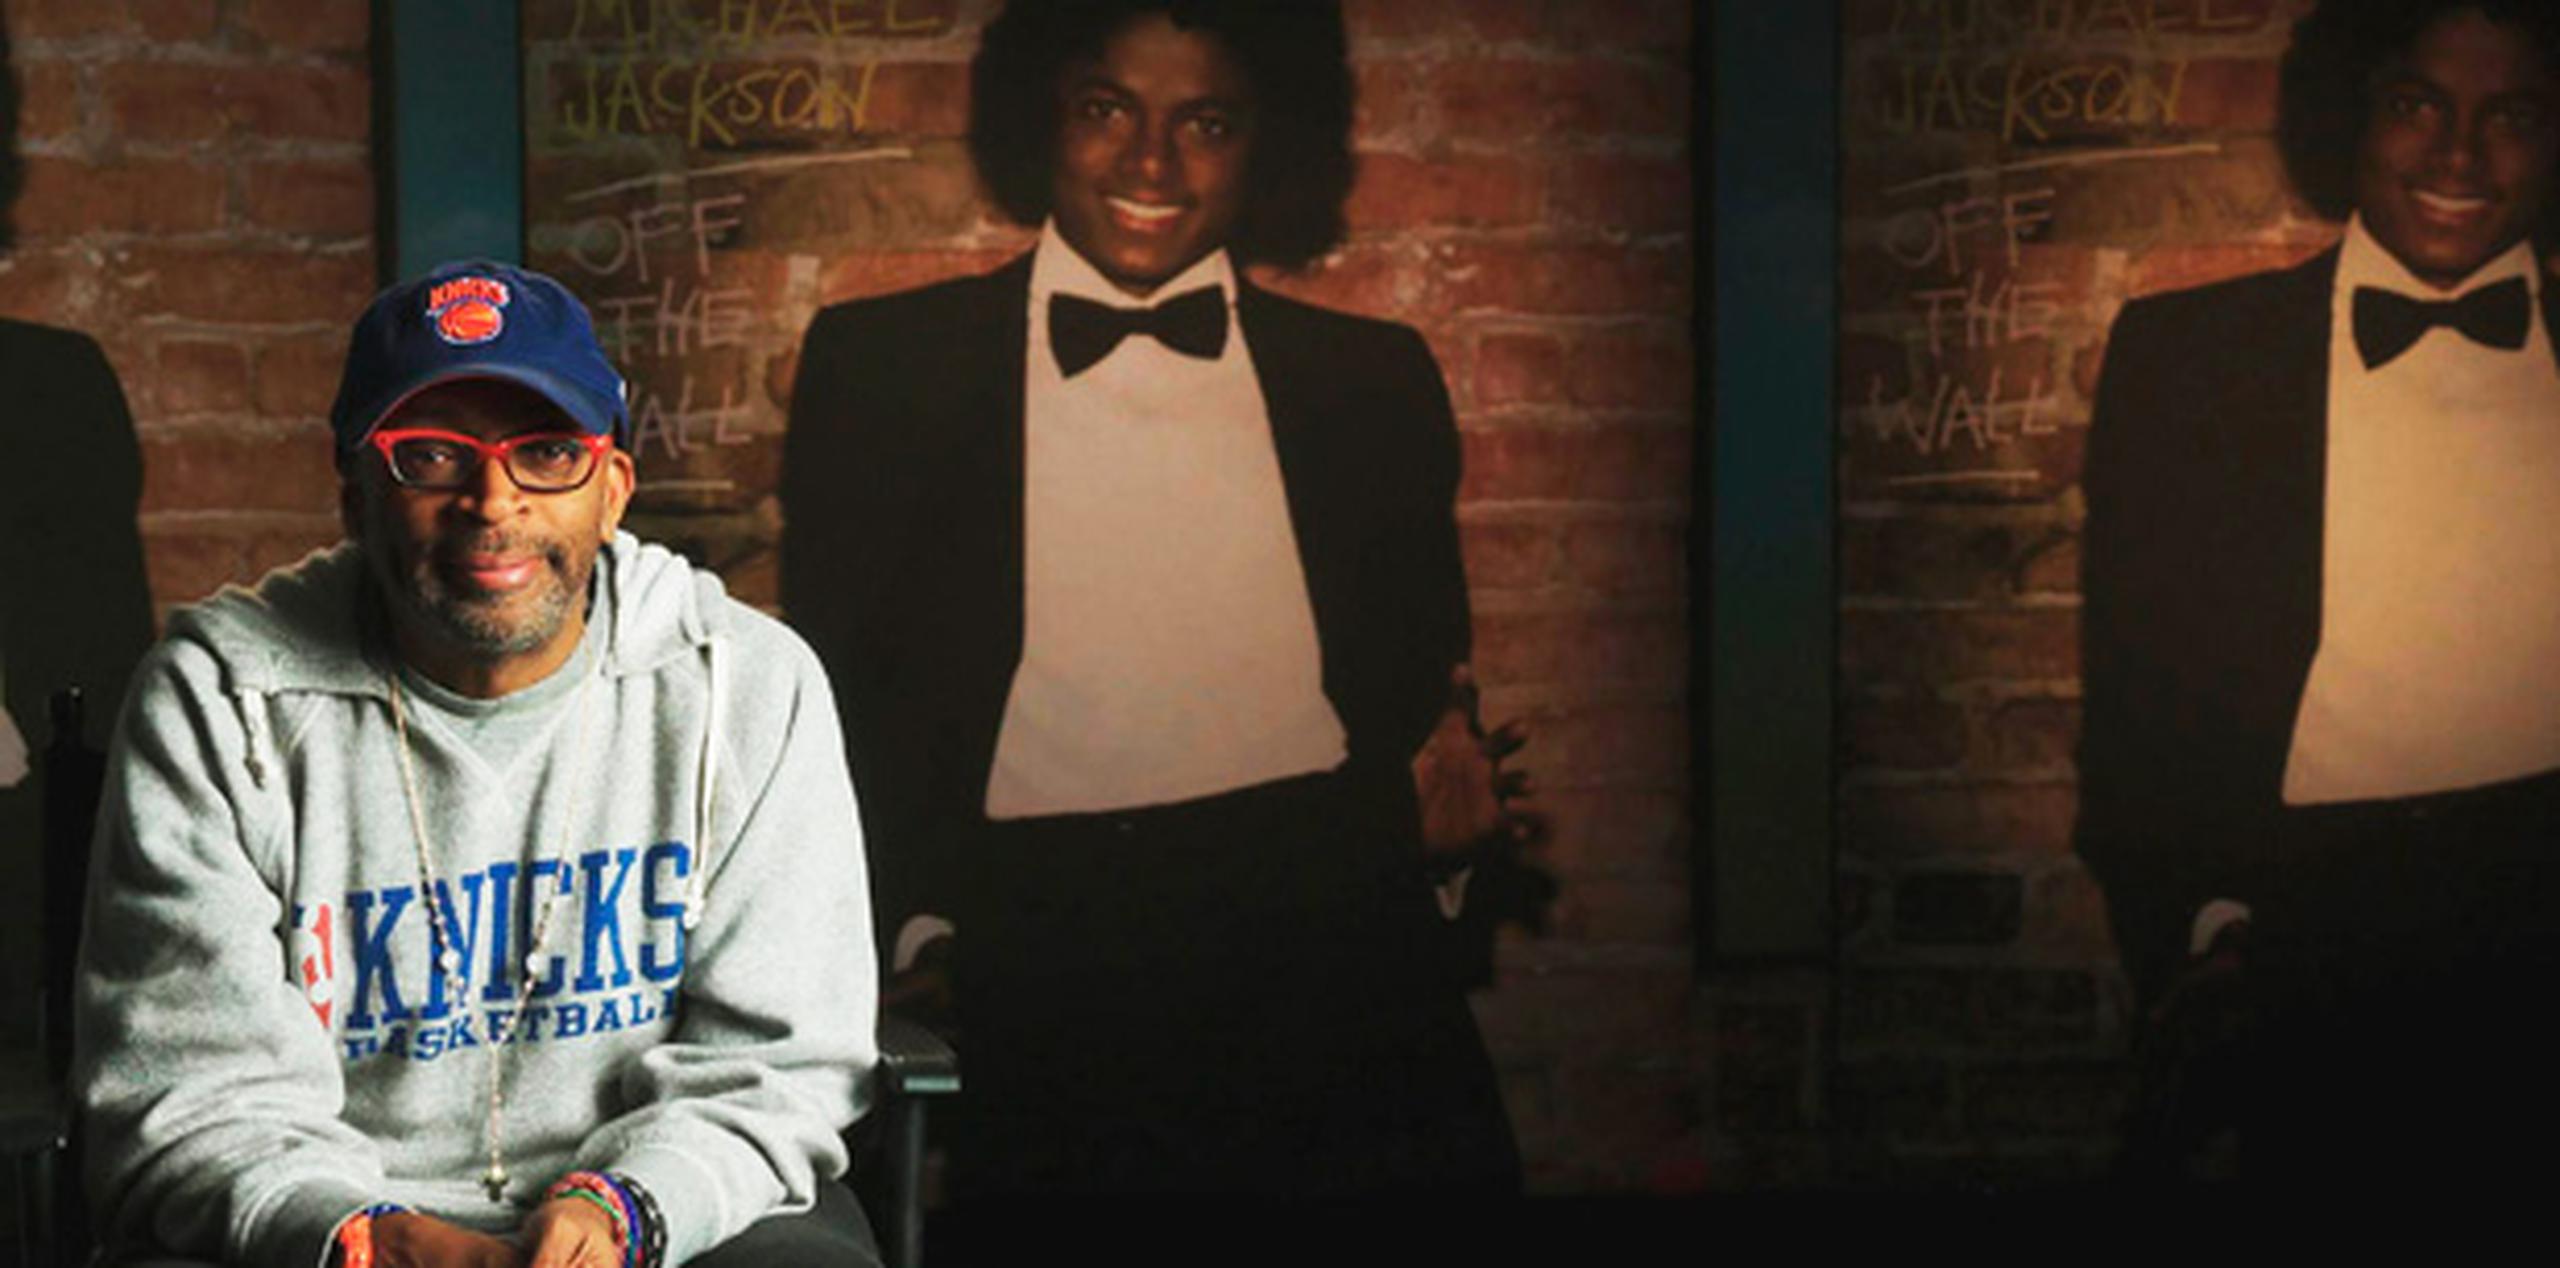 La ambición de Jackson para el triunfo y su sorprendente talento como cantante, bailarín y compositor de canciones son el tema central del nuevo documental de Spike Lee. (AP)